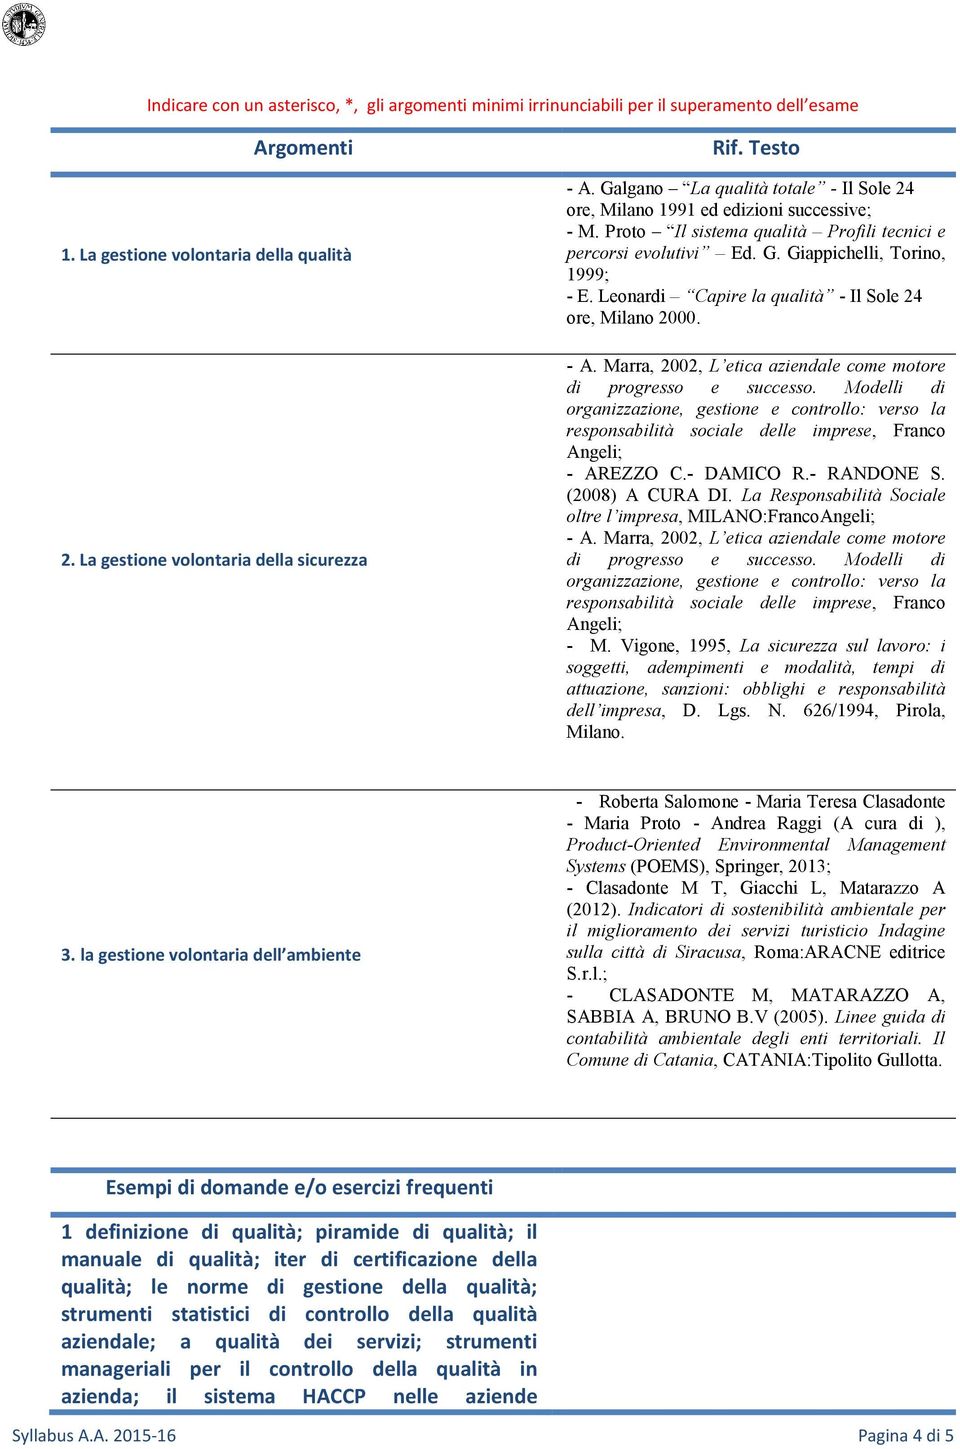 Leonardi Capire la qualità - Il Sole 24 ore, Milano 2000. - A. Marra, 2002, L etica aziendale come motore di progresso e successo.